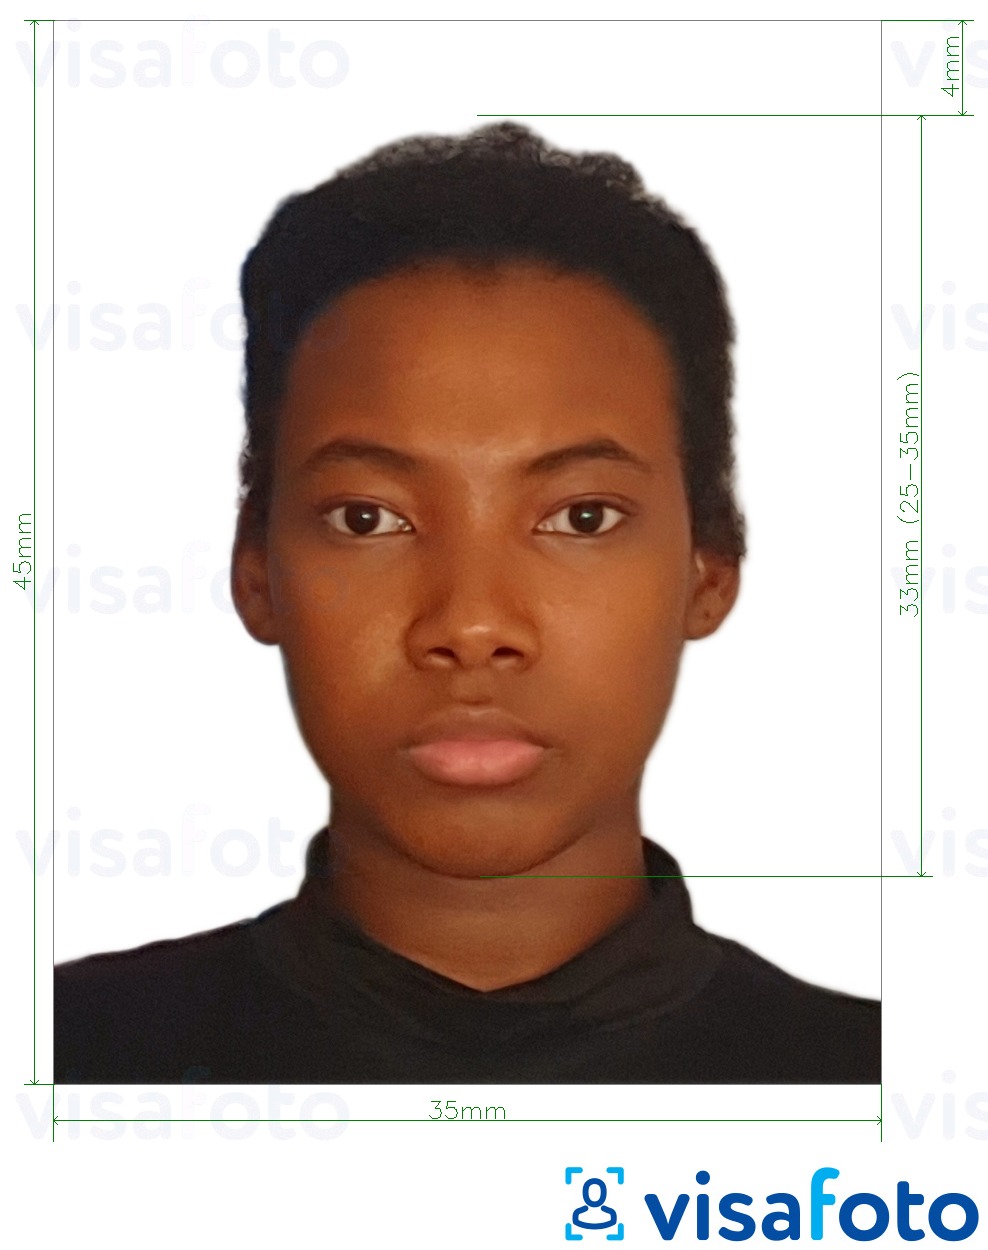 Fotobeispiel für Jamaika Pass 35x45 mm (3,5x4,5 cm) mit genauer größenangabe